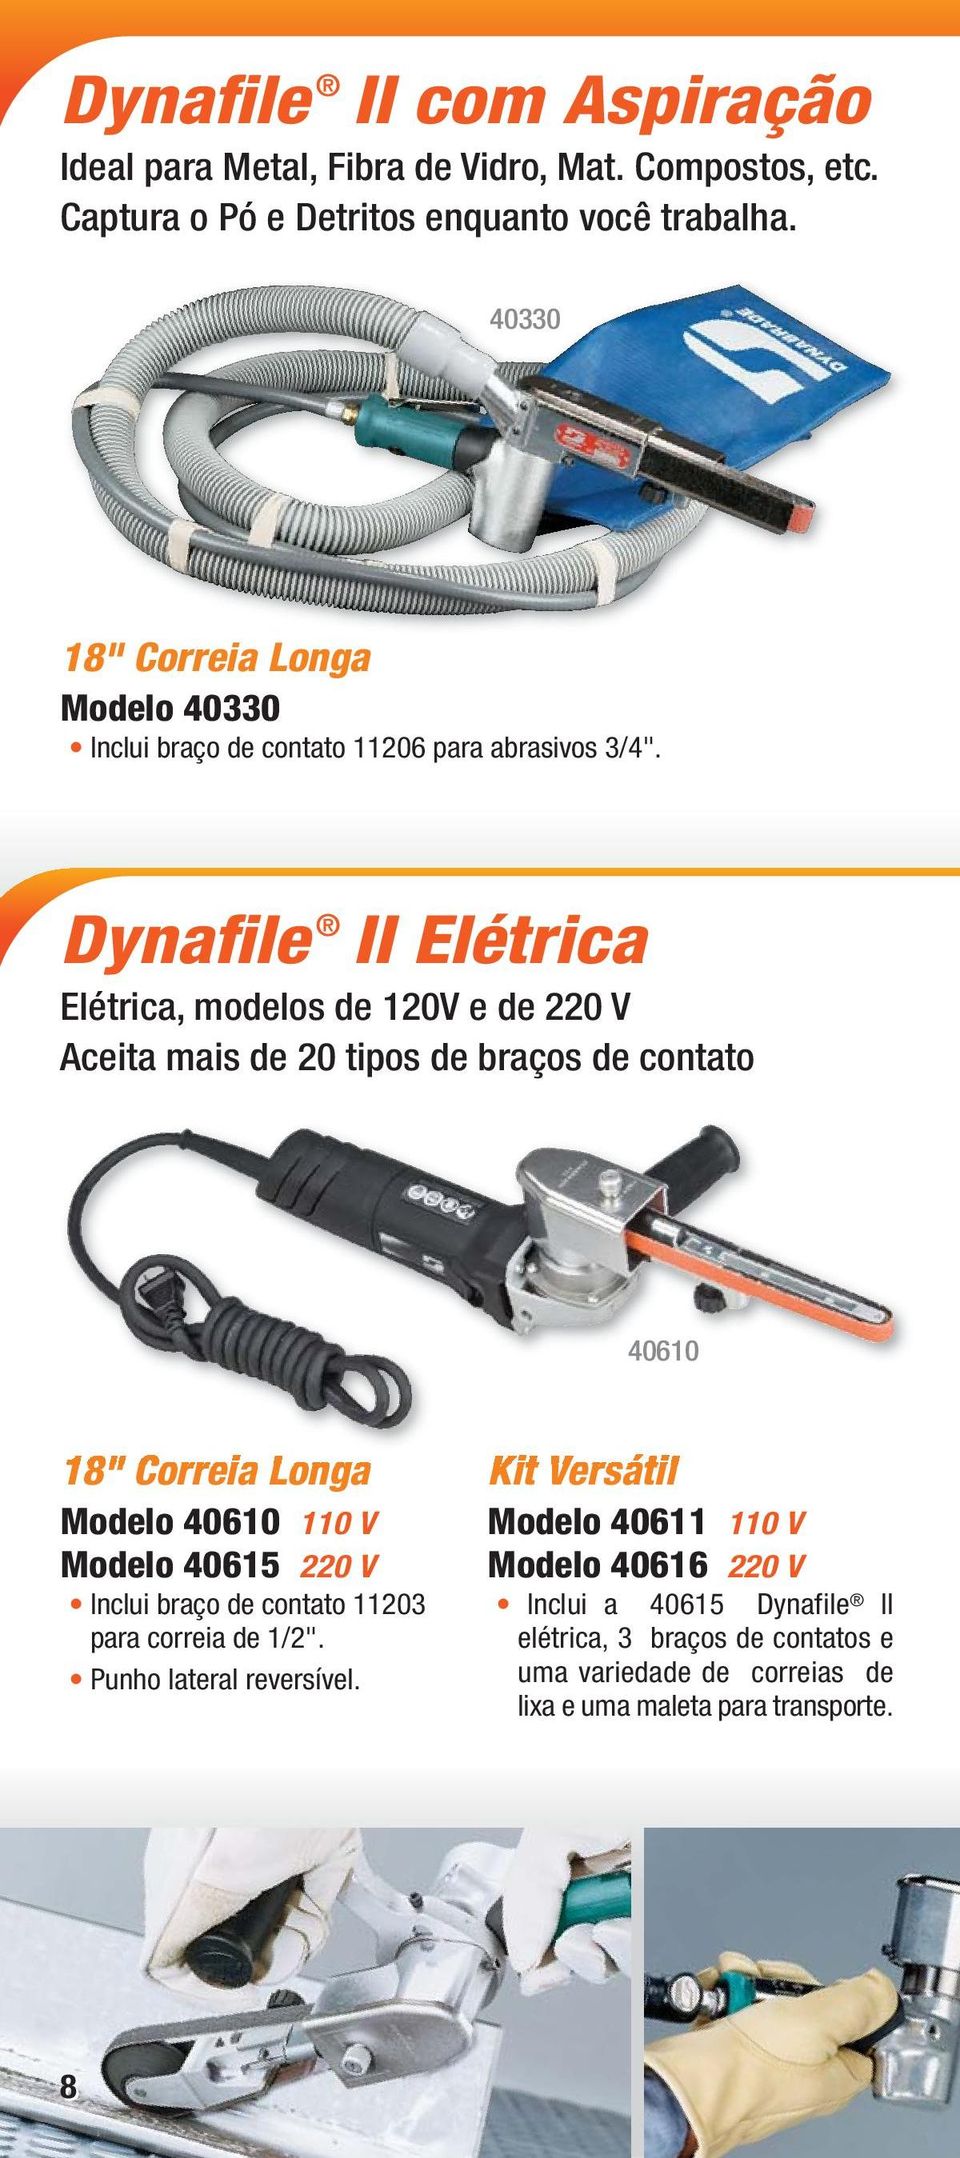 Dynafile II Elétrica Elétrica, modelos de 120V e de 220 V Aceita mais de 20 tipos de braços de contato 40610 18" Correia Longa Modelo 40610 110 V Modelo 40615